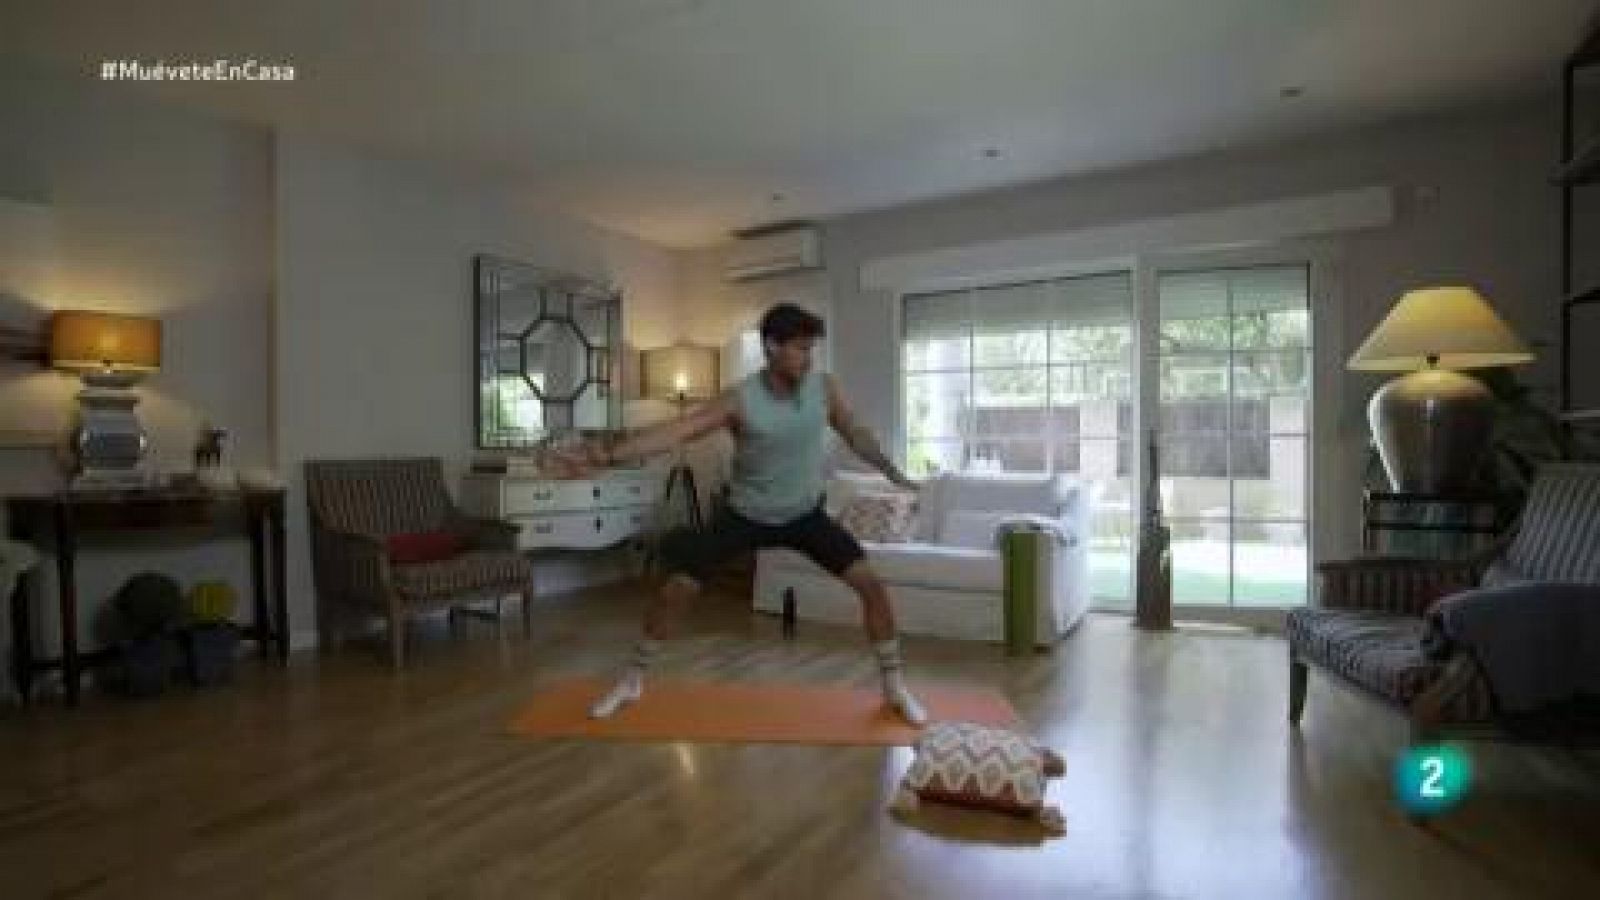 ¡Prepara el cuerpo para una clase de flexibilidad y equilibrio! | Muévete en casa